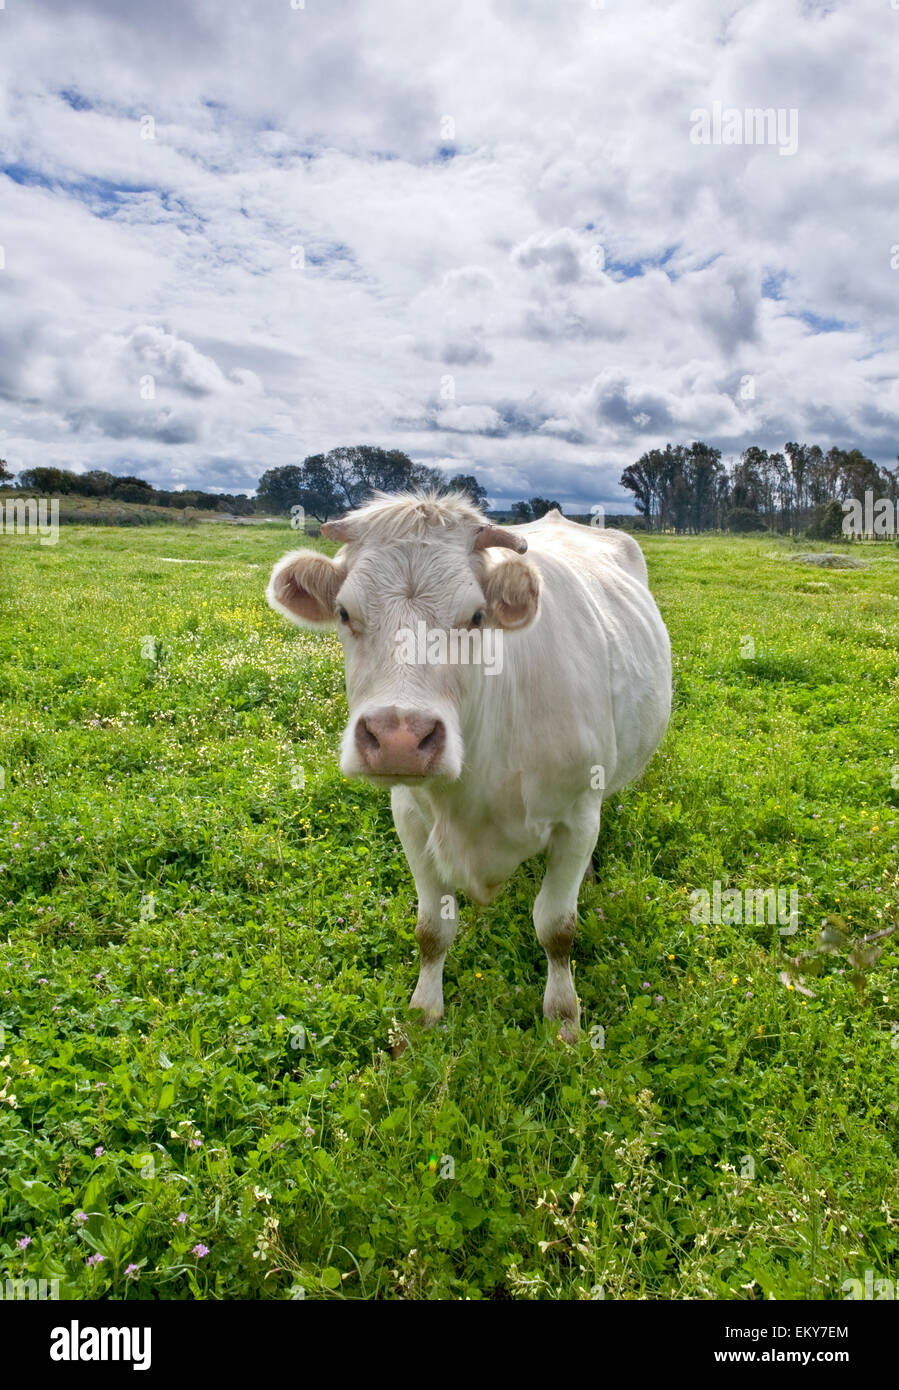 Charolais bovini sono una razza di carne del bestiame (Bos taurus) che ha avuto origine in Charolais, intorno Charolles, in Francia. Essi sono ra Foto Stock